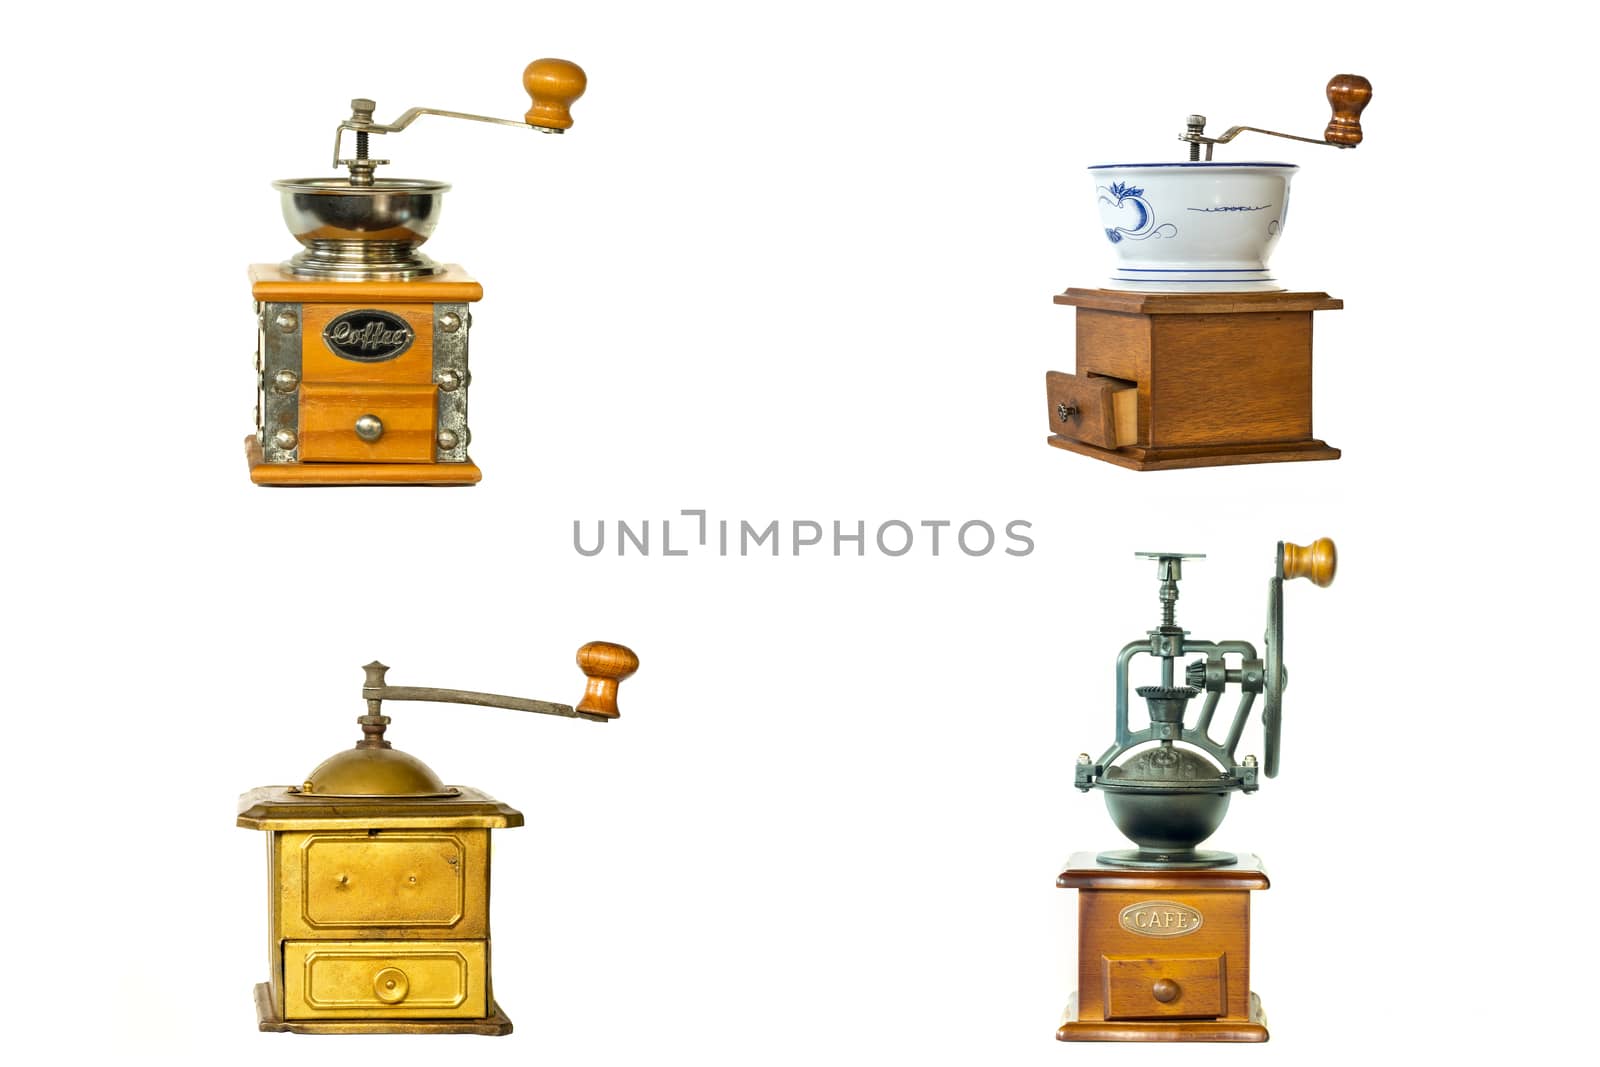 vintage coffee grinders by Nawoot